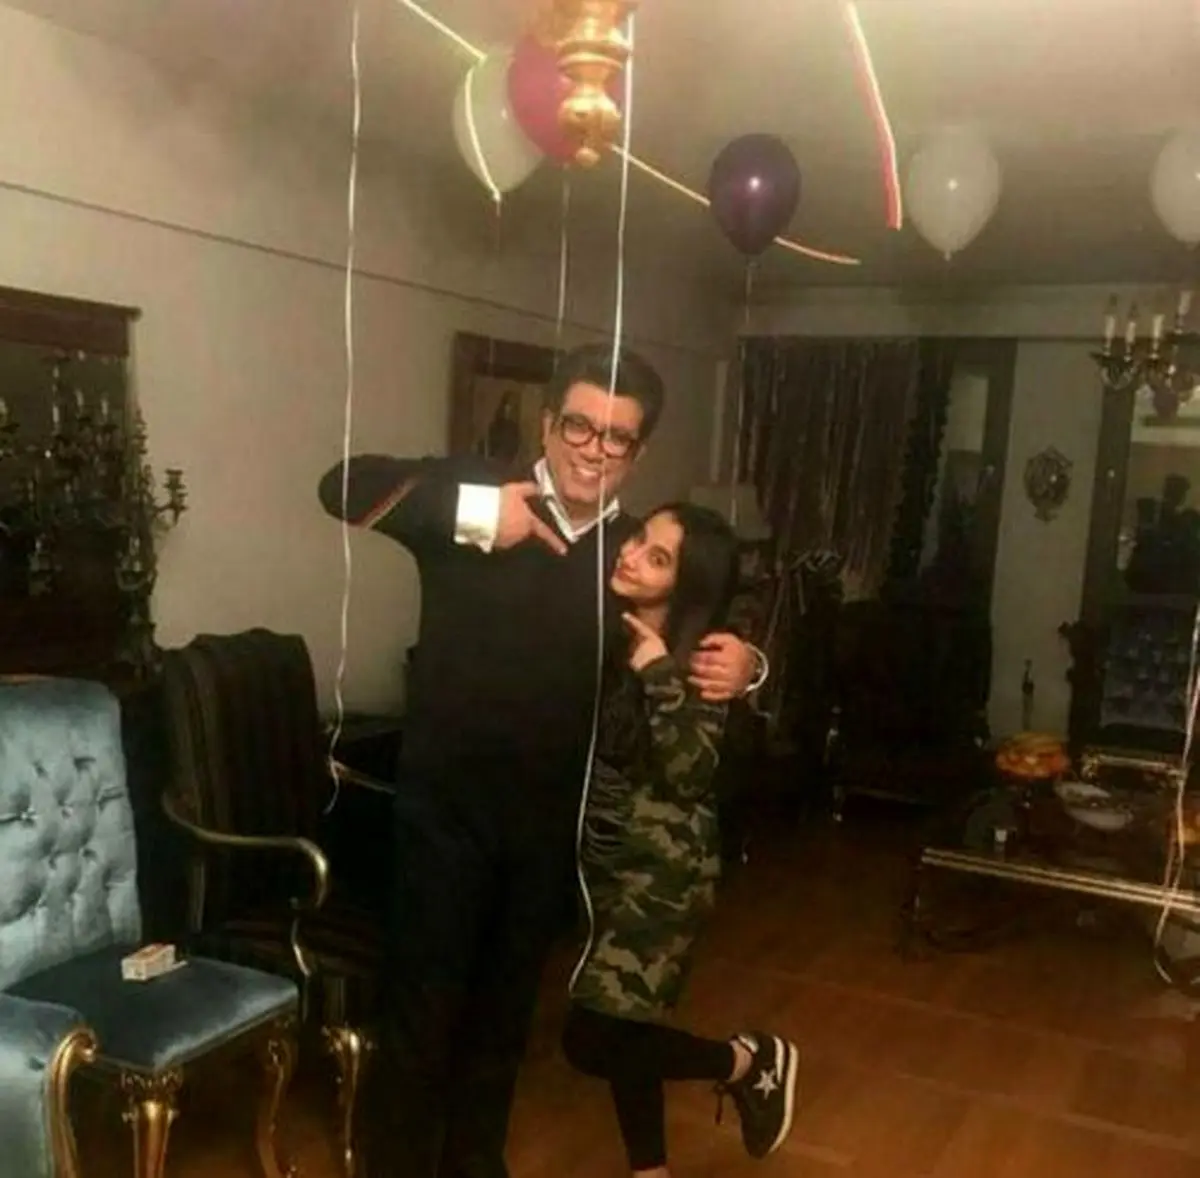 عکسی جالب و دیده نشده از جشن تولد دختر رضا رشید پور در خانه لاکچری شان منتشر شد که برای مخاطبان جالب به نظر می رسید.